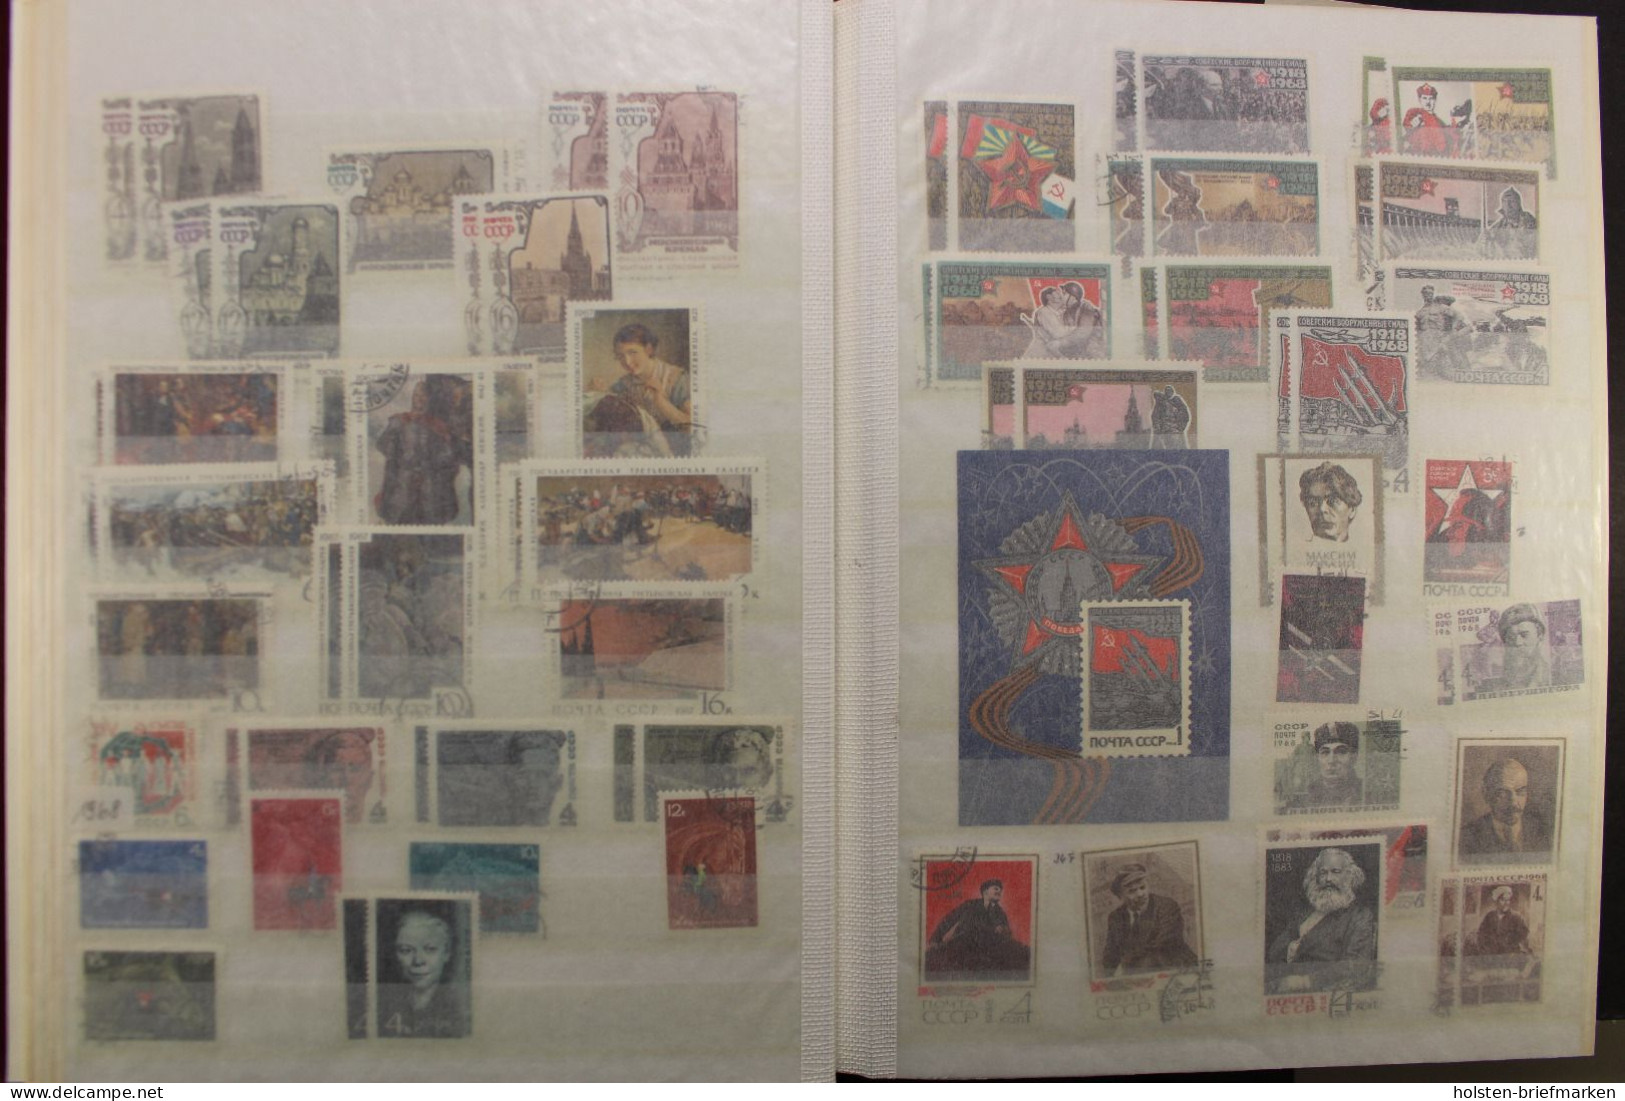 Sowjetunion 1923-1991, große Sammlung in 5 Alben